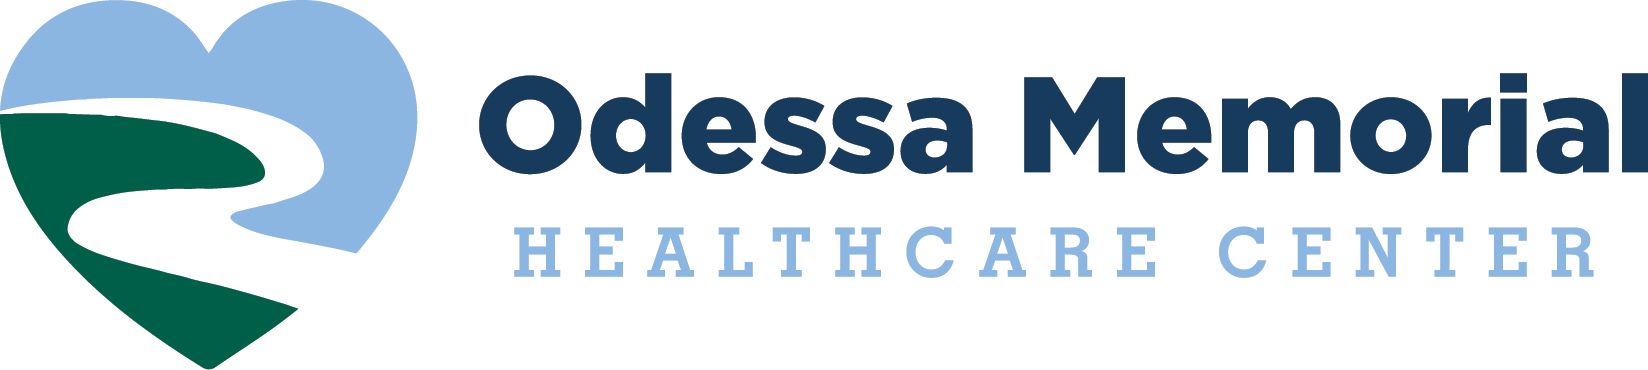 Odessa Memorial Healthcare Center logo